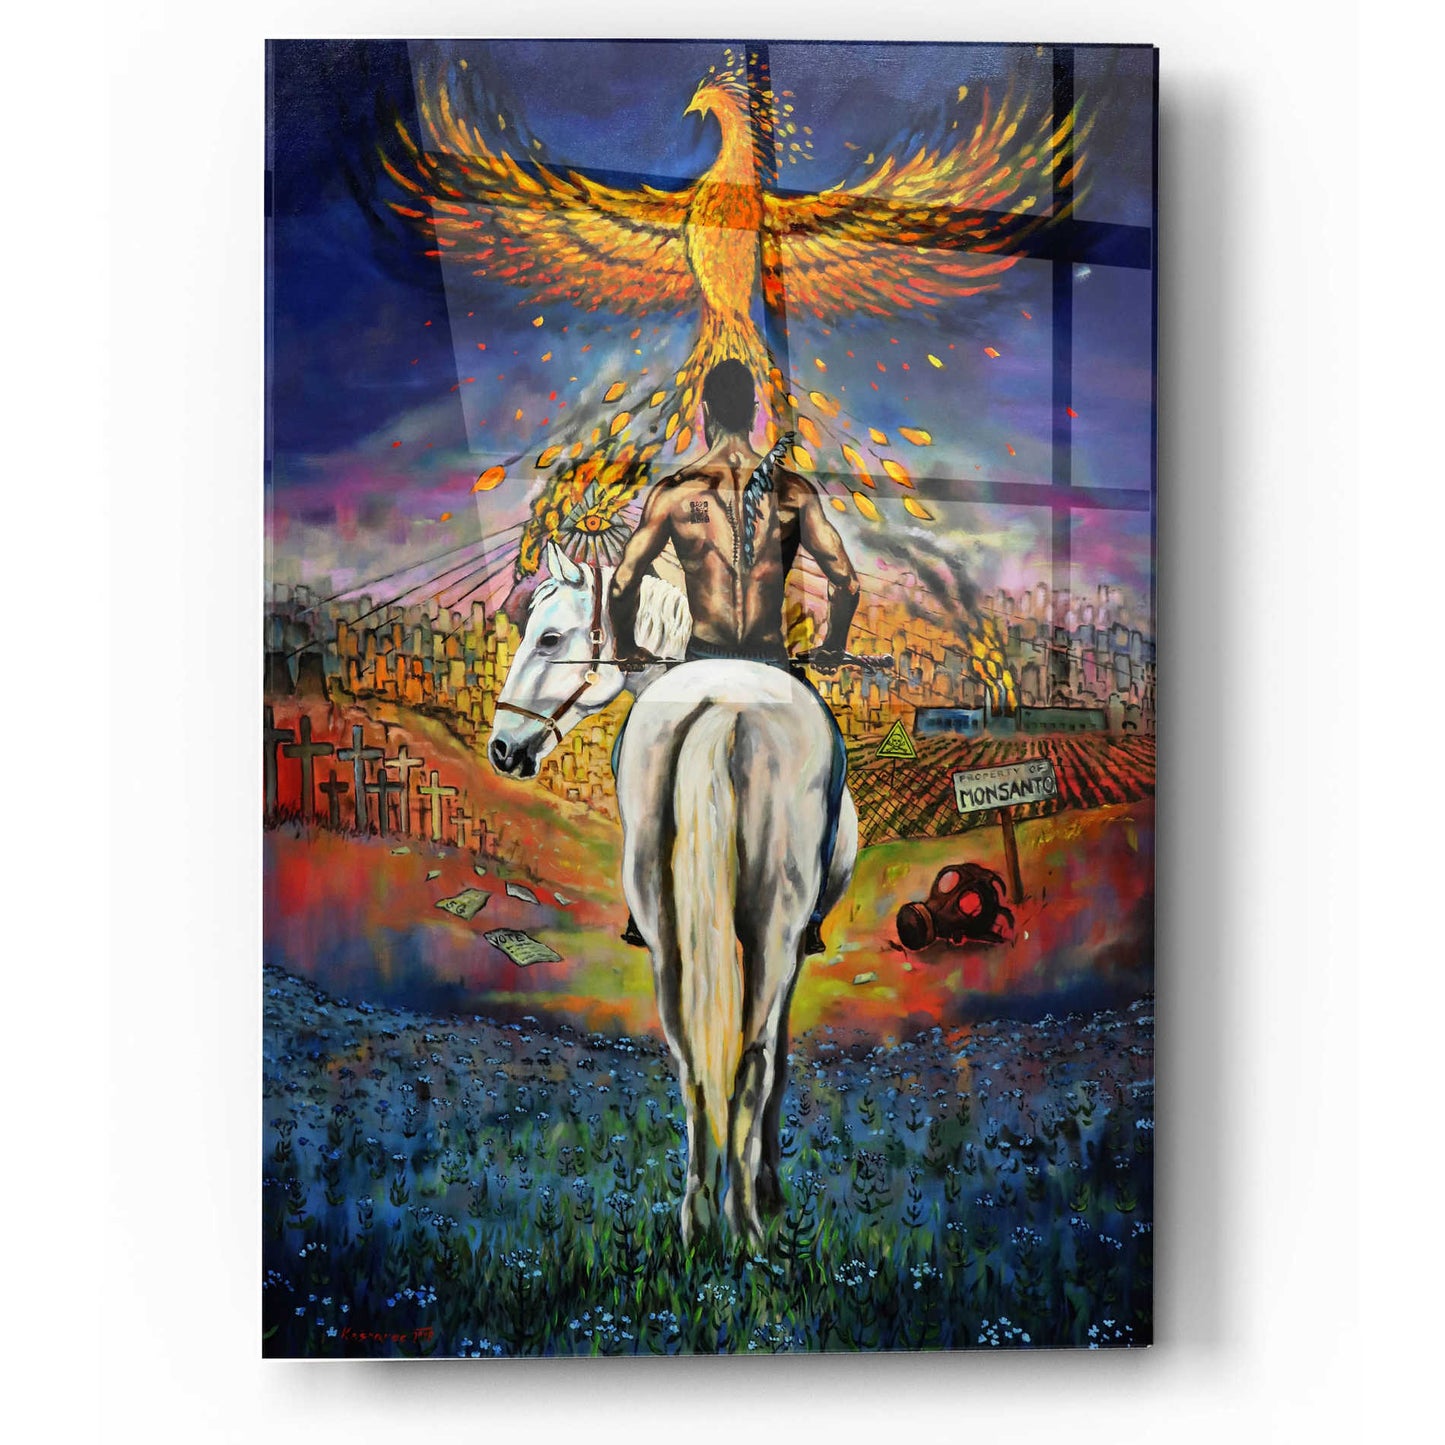 Epic Art 'Fallen Angel' by Jan Kasparec, Acrylic Glass Wall Art